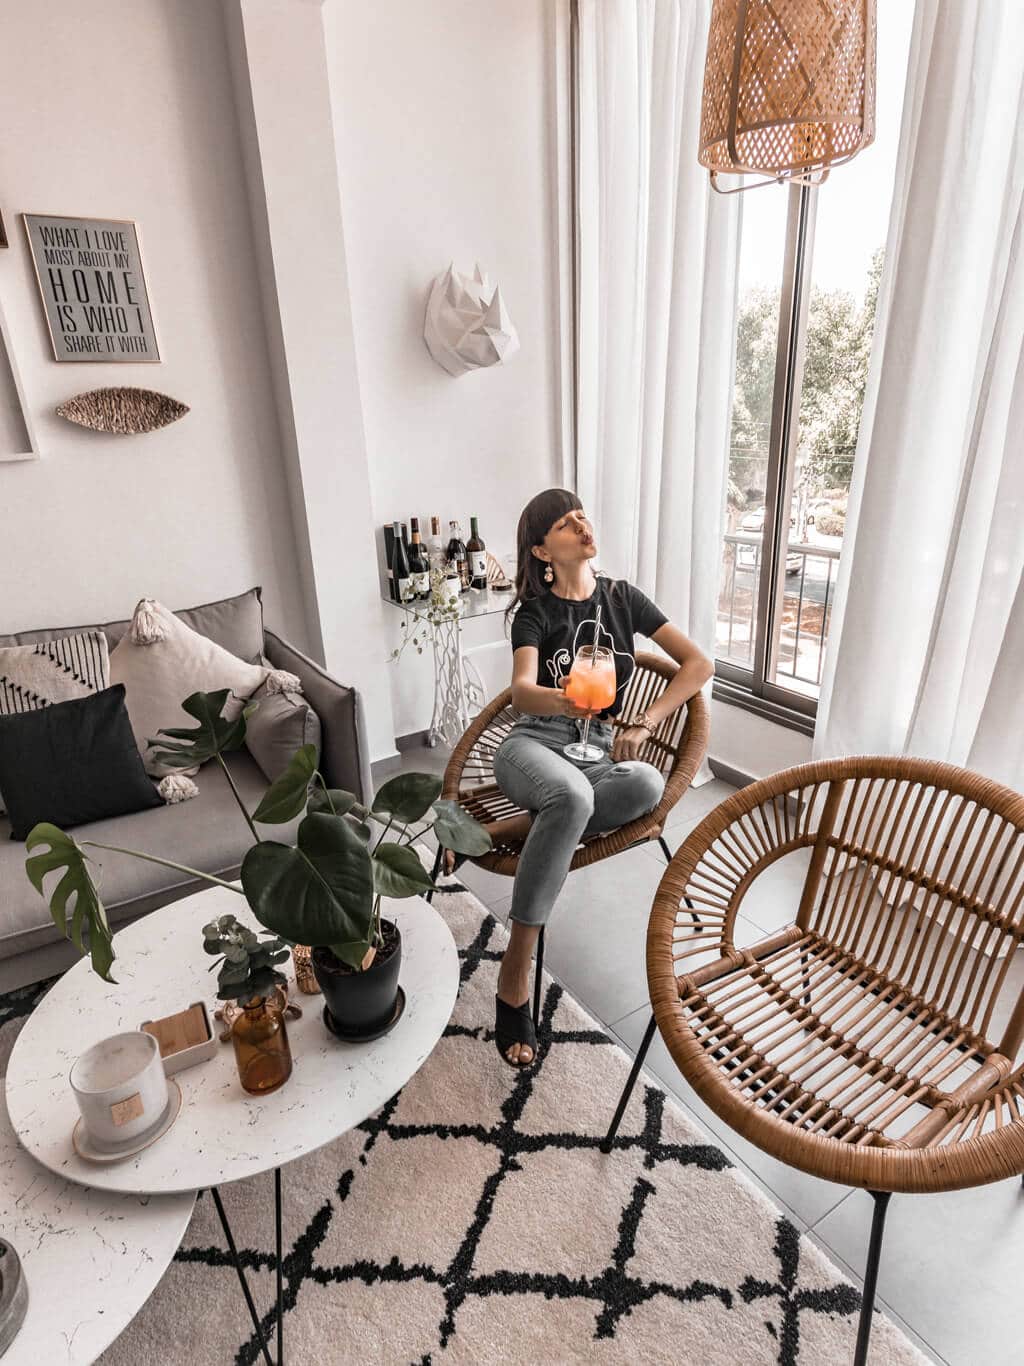 סיור בסלון שלי - עיצוב אקלקטבי סקנדינבי, ג׳ונגל אורבני | Hedonistit living room tour - eclectic nordic urban jungle home styling